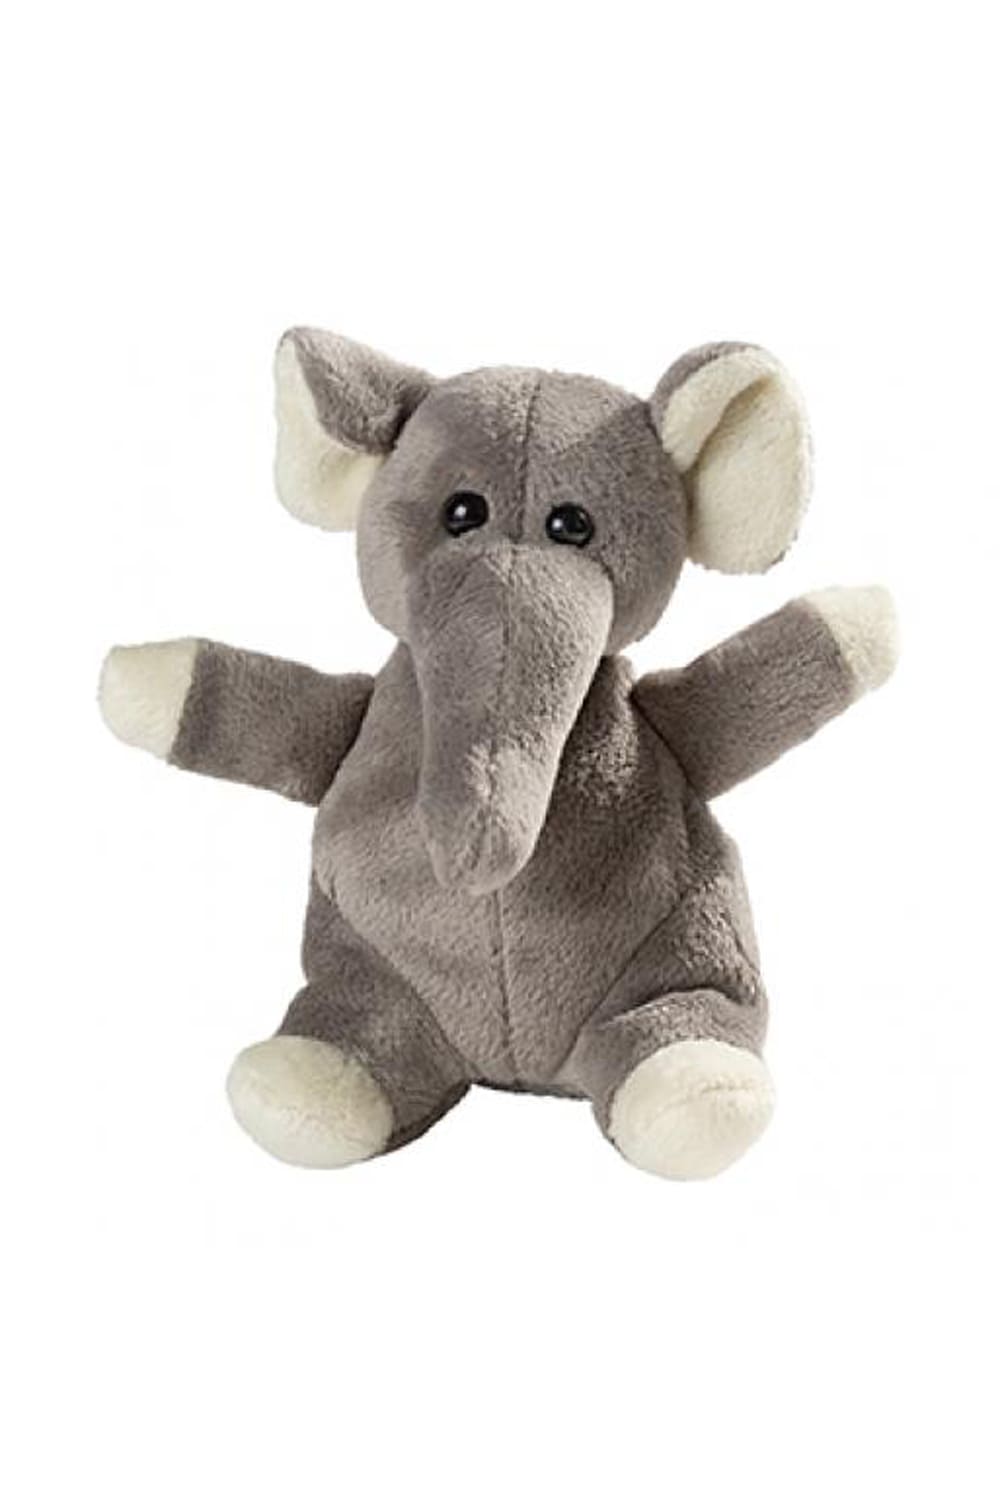 Plueschtier Elefant in der Farbe grau. Ideales Geschenk zur Geburt oder fuer Kinder